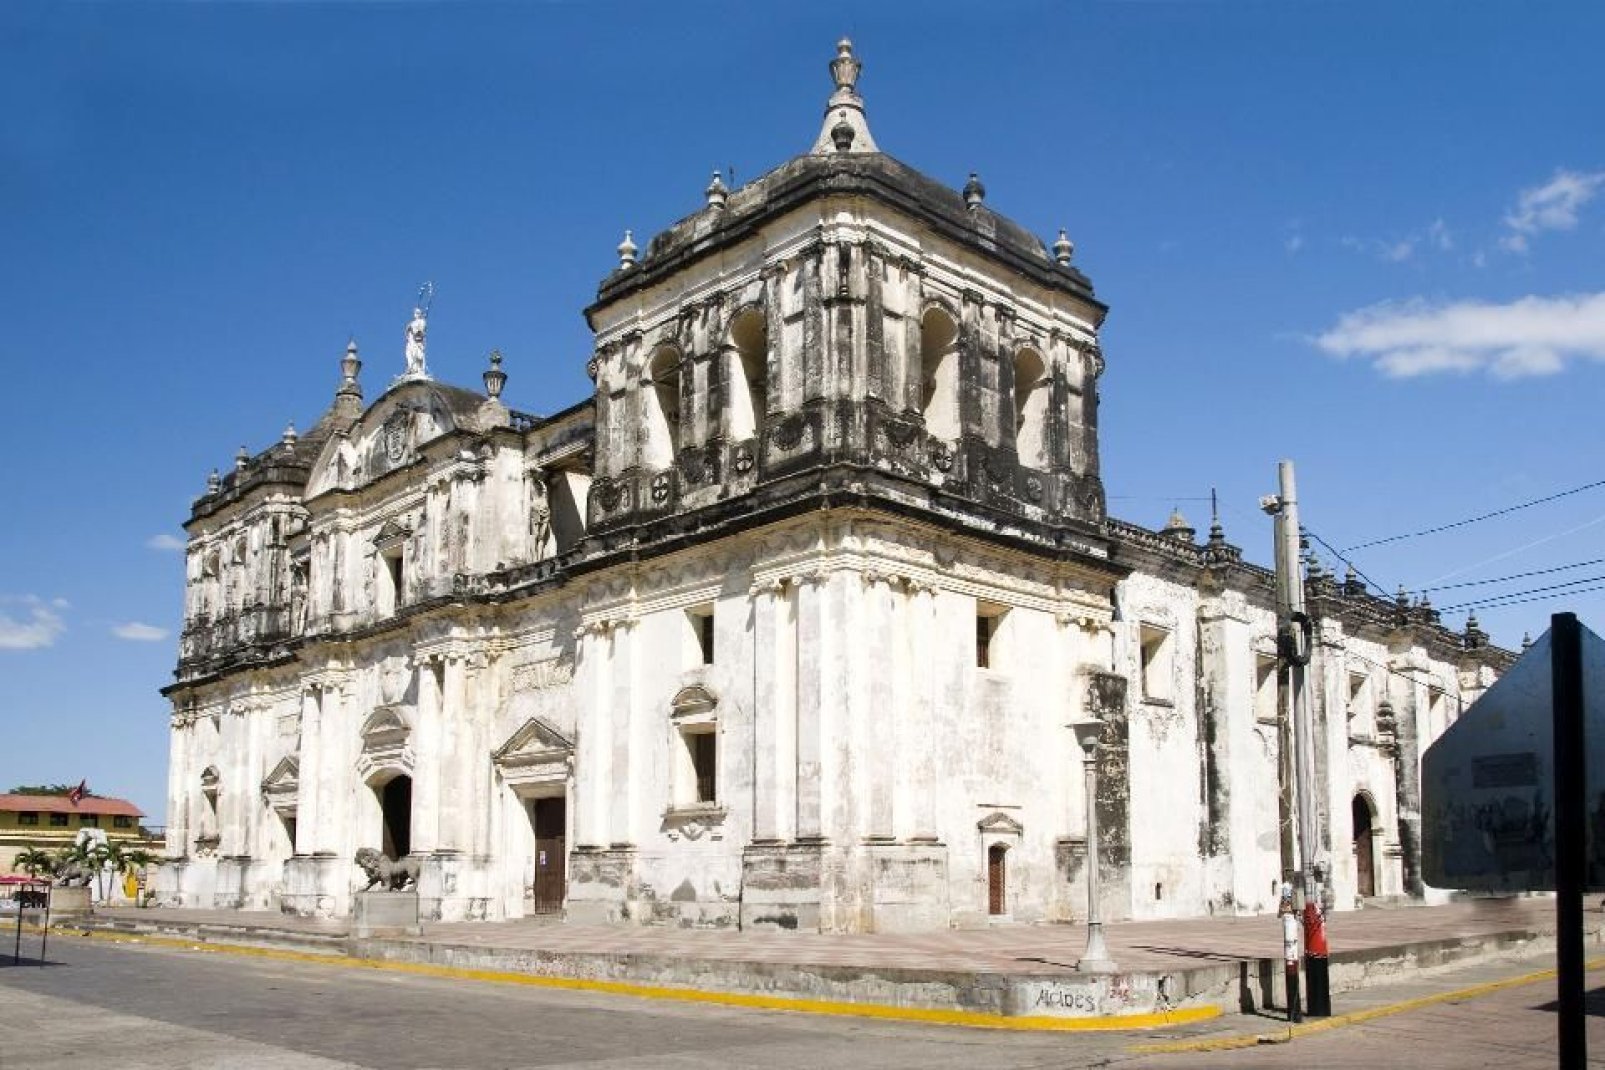 In der Kathedrale befindet sich die letzte Ruhestätte zahlreicher berühmter Persönlichkeiten, wie z.B. Ruben Dario, der berühmte nicaraguanische Dichter.